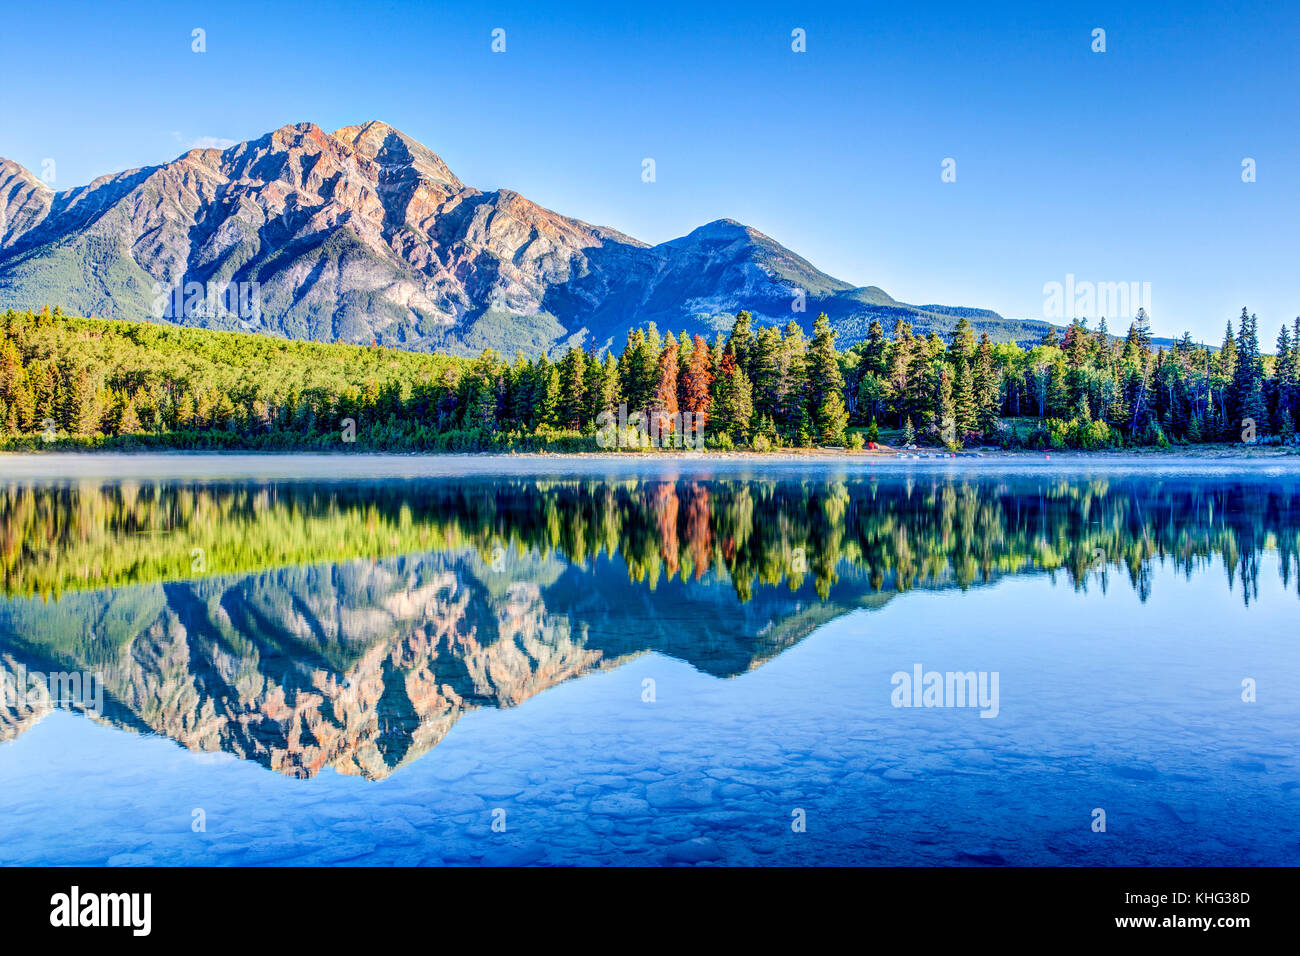 Alberi colorati rivestiti sulle rive del lago di patricia al parco nazionale di Jasper con montagna piramidale in background. Il lago calmo riflette uno specchio imag Foto Stock